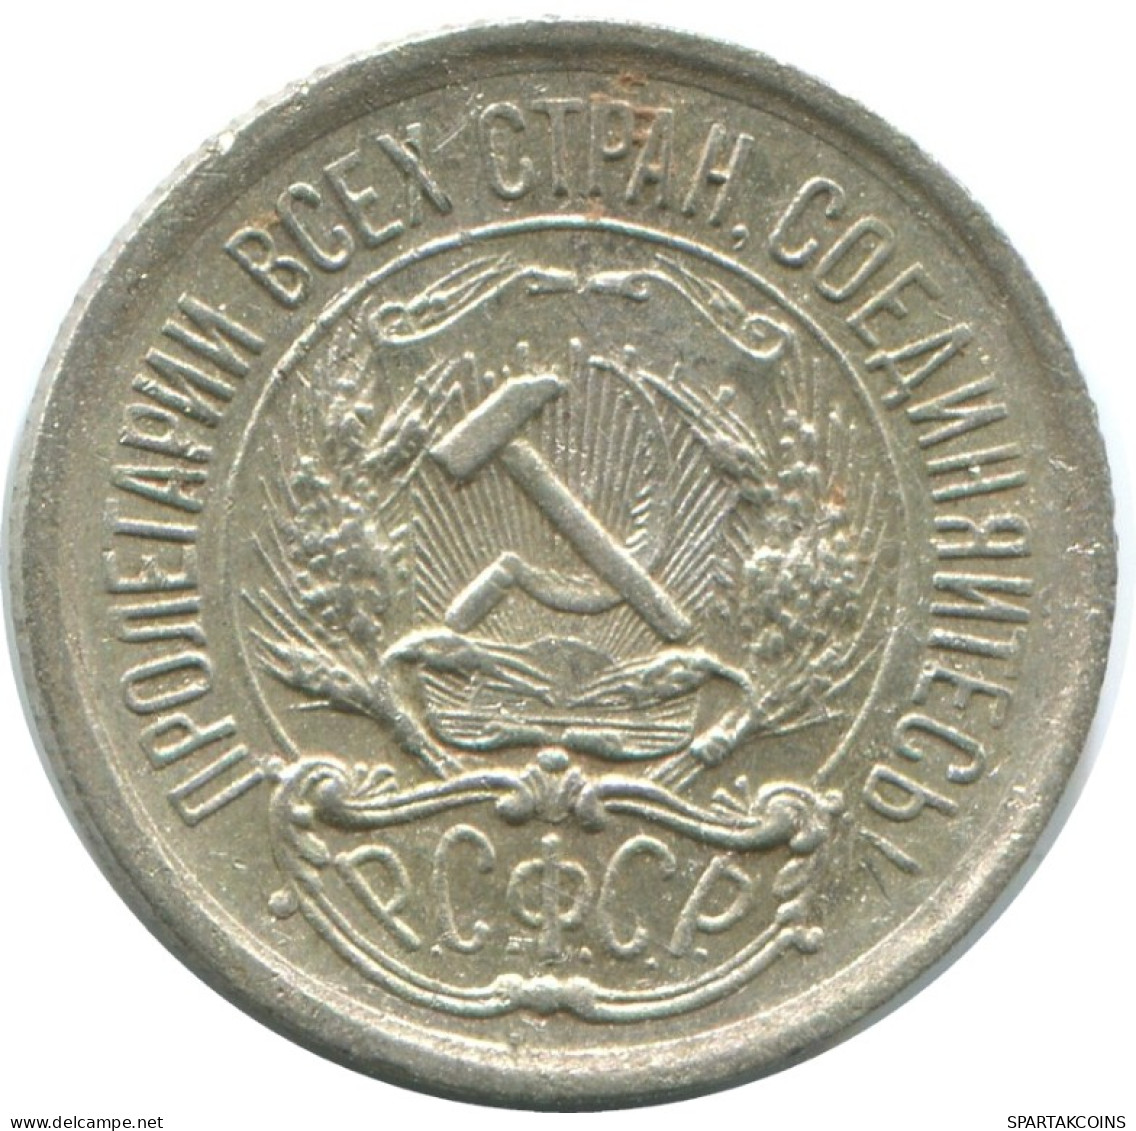 10 KOPEKS 1923 RUSSLAND RUSSIA RSFSR SILBER Münze HIGH GRADE #AE988.4.D.A - Russia